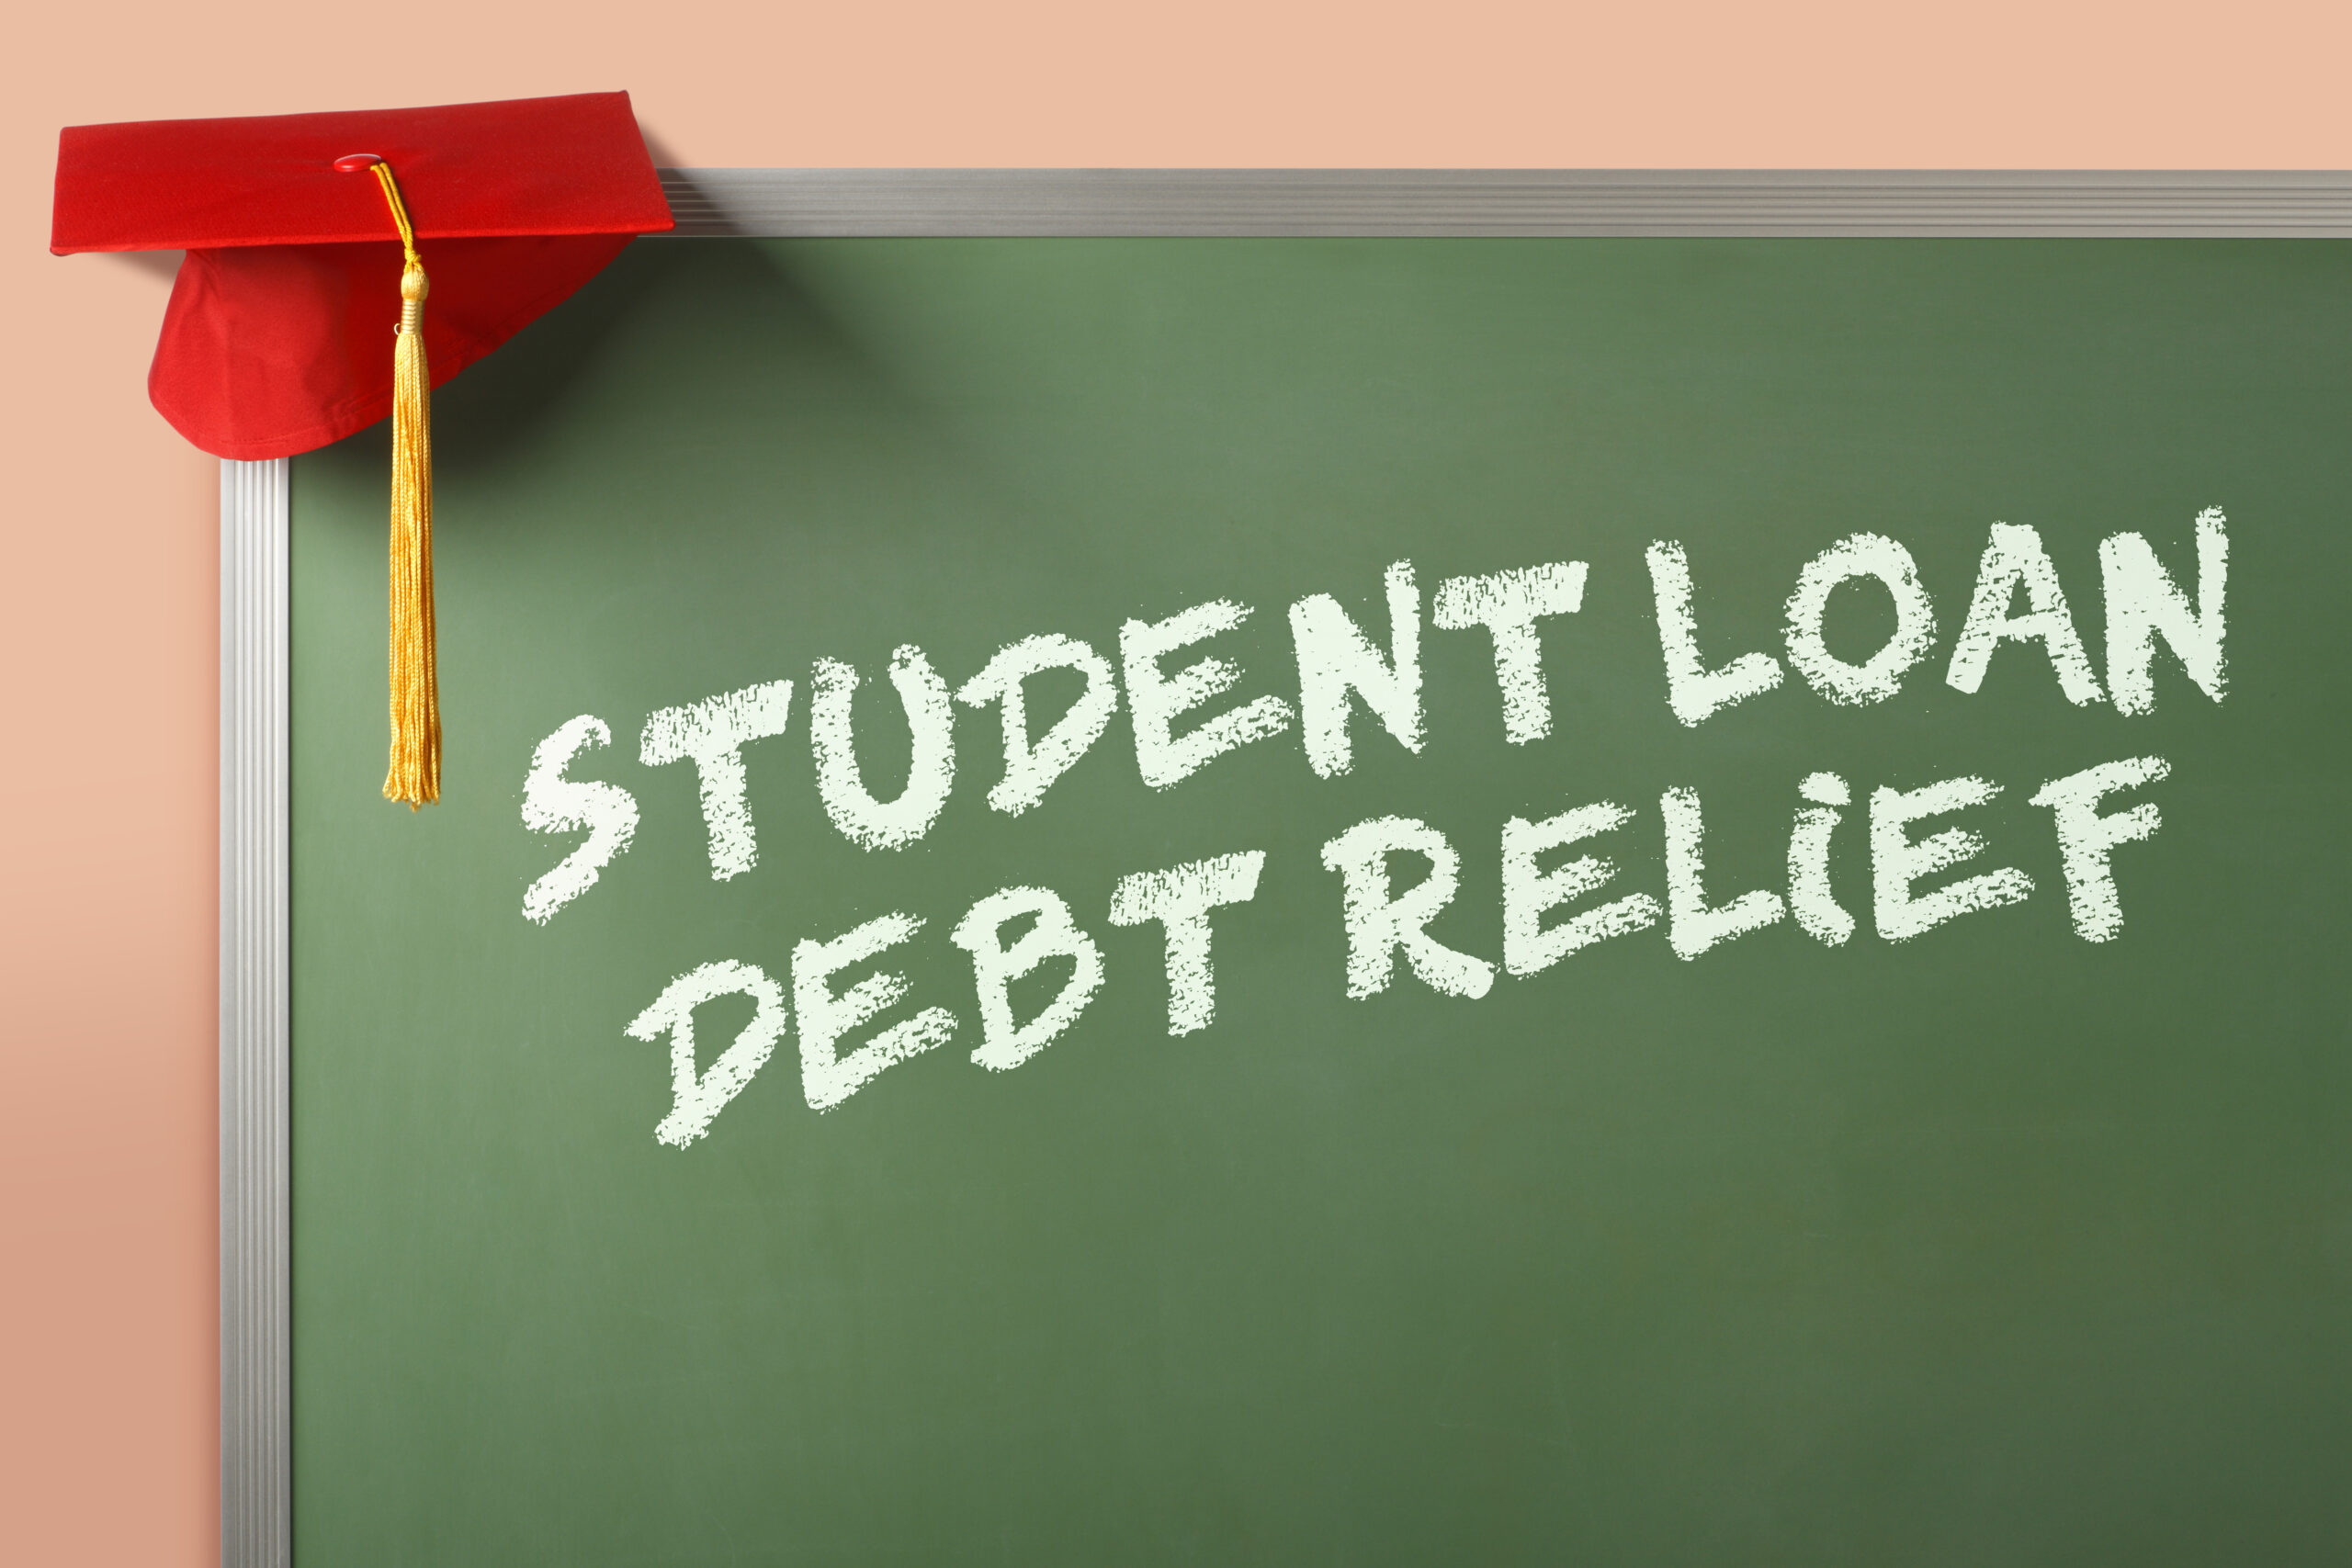 Relief of student loan debt